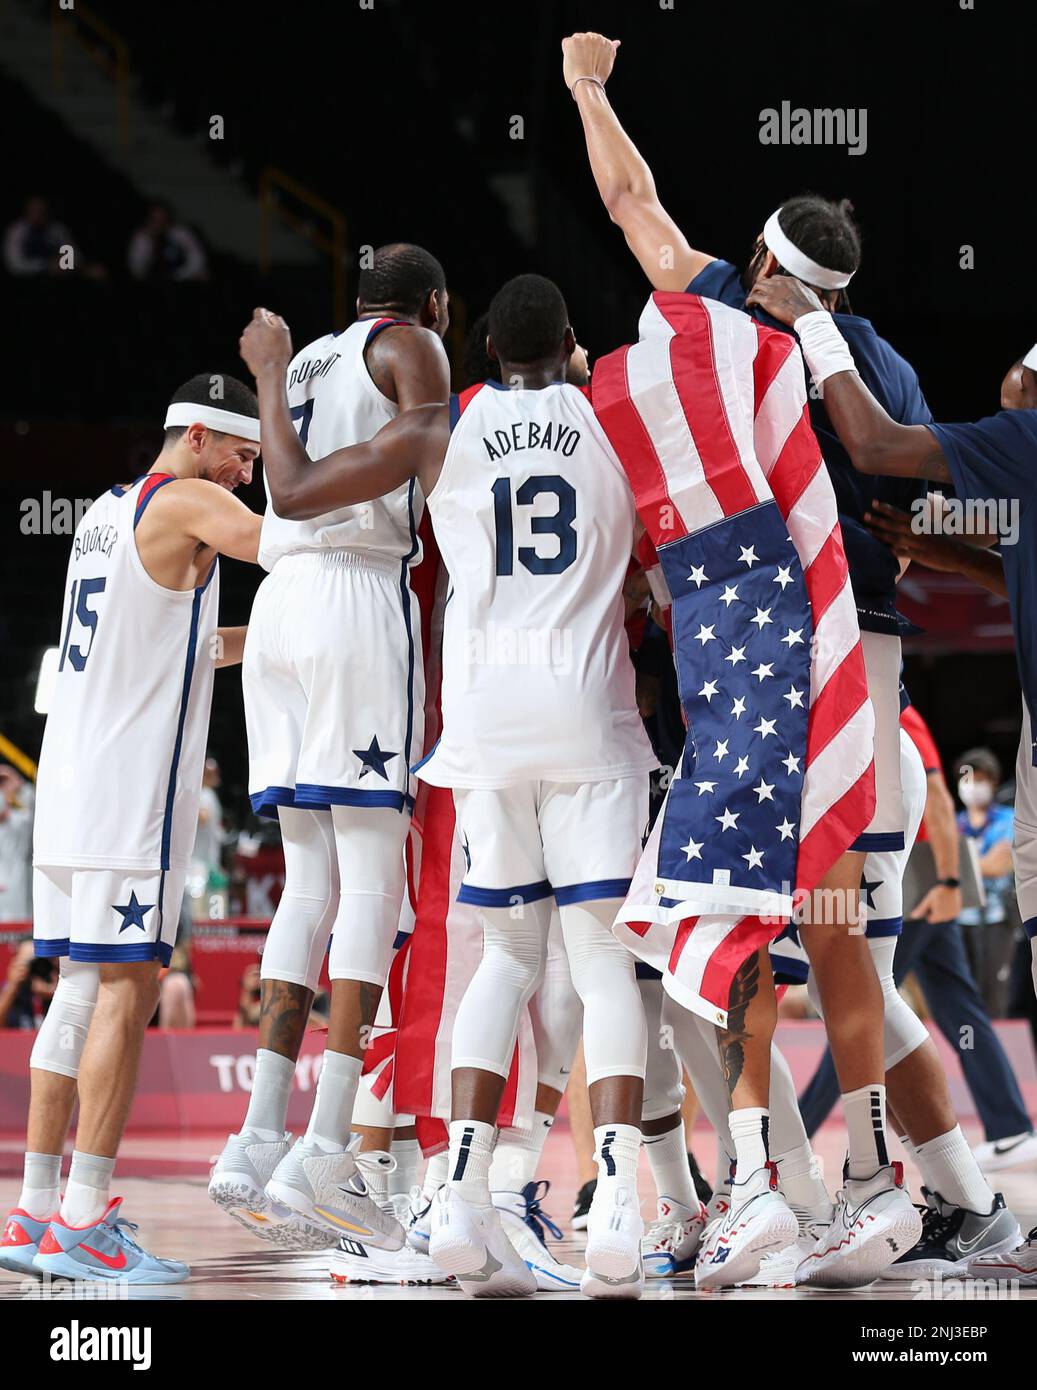 7 AOÛT 2021 : BAM Adebayo et Team USA célèbrent leur victoire au jeu de médaille d'or du basket-ball masculin aux Jeux Olympiques de Tokyo 2020 (photo de Mickael Chavet/RX) Banque D'Images